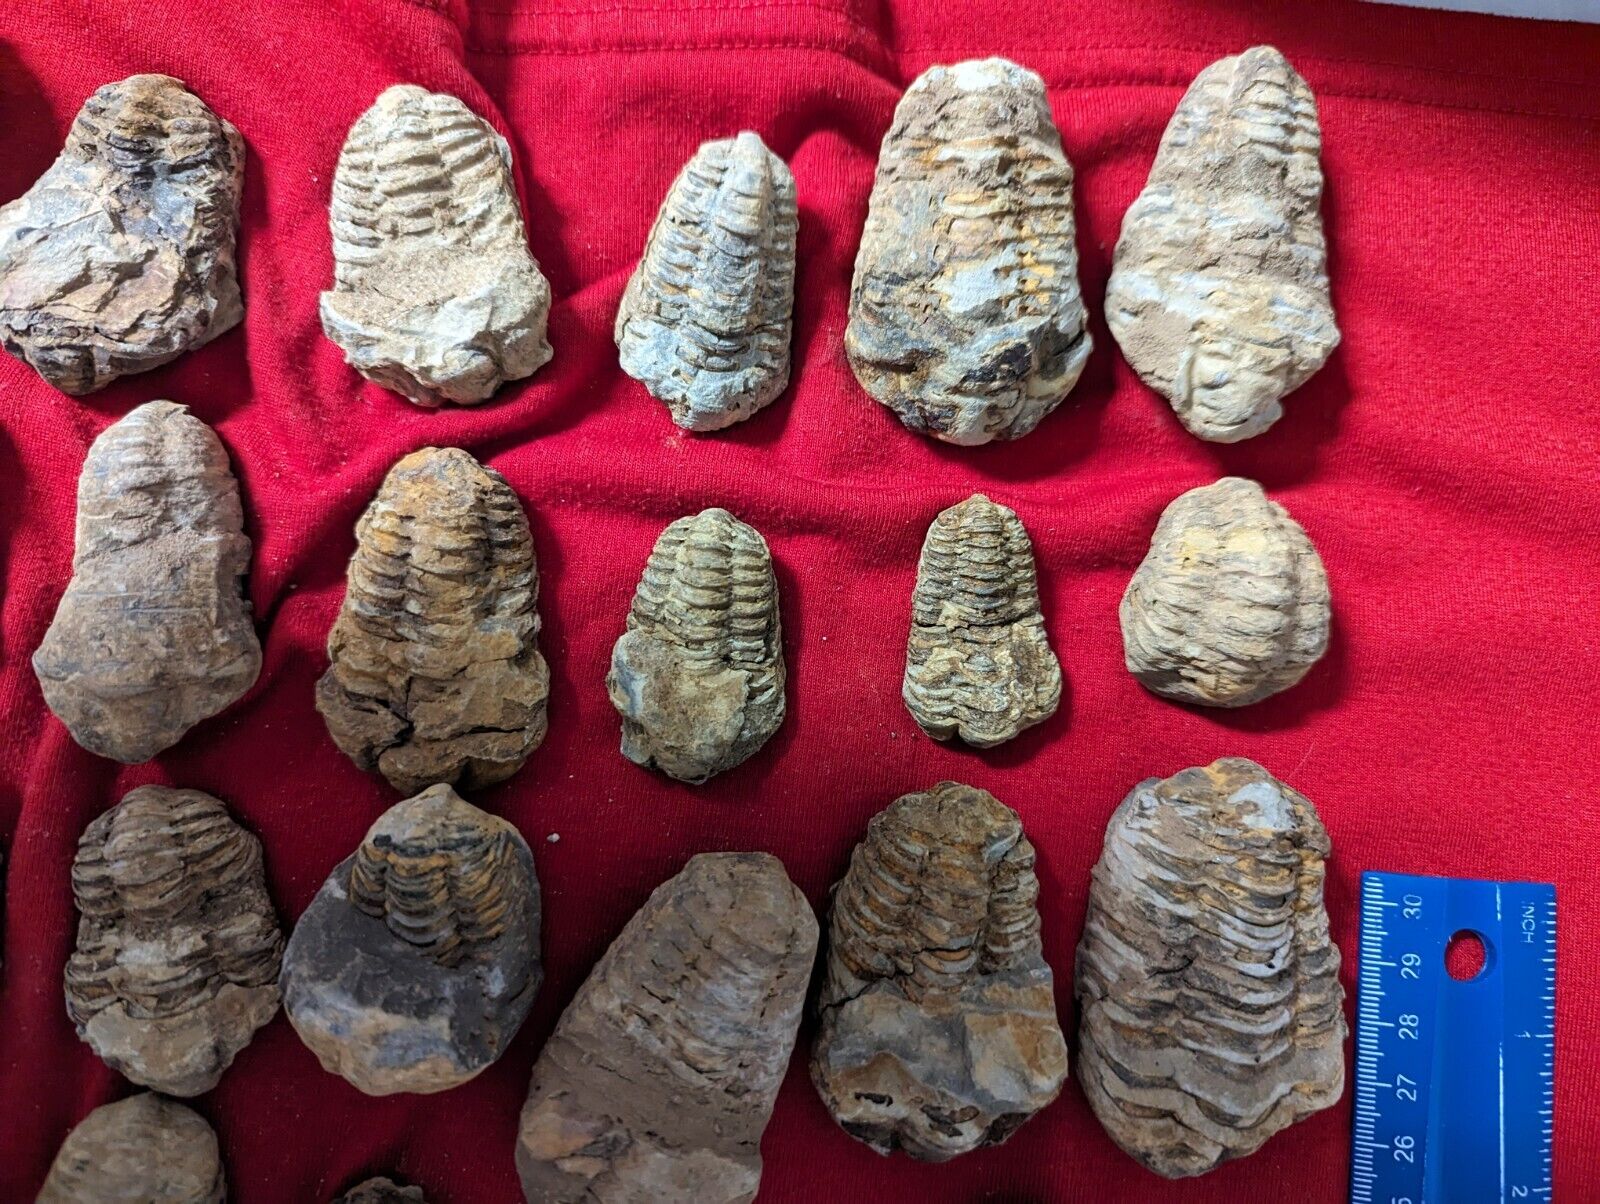 1 large medium Fossil Trilobite per lot